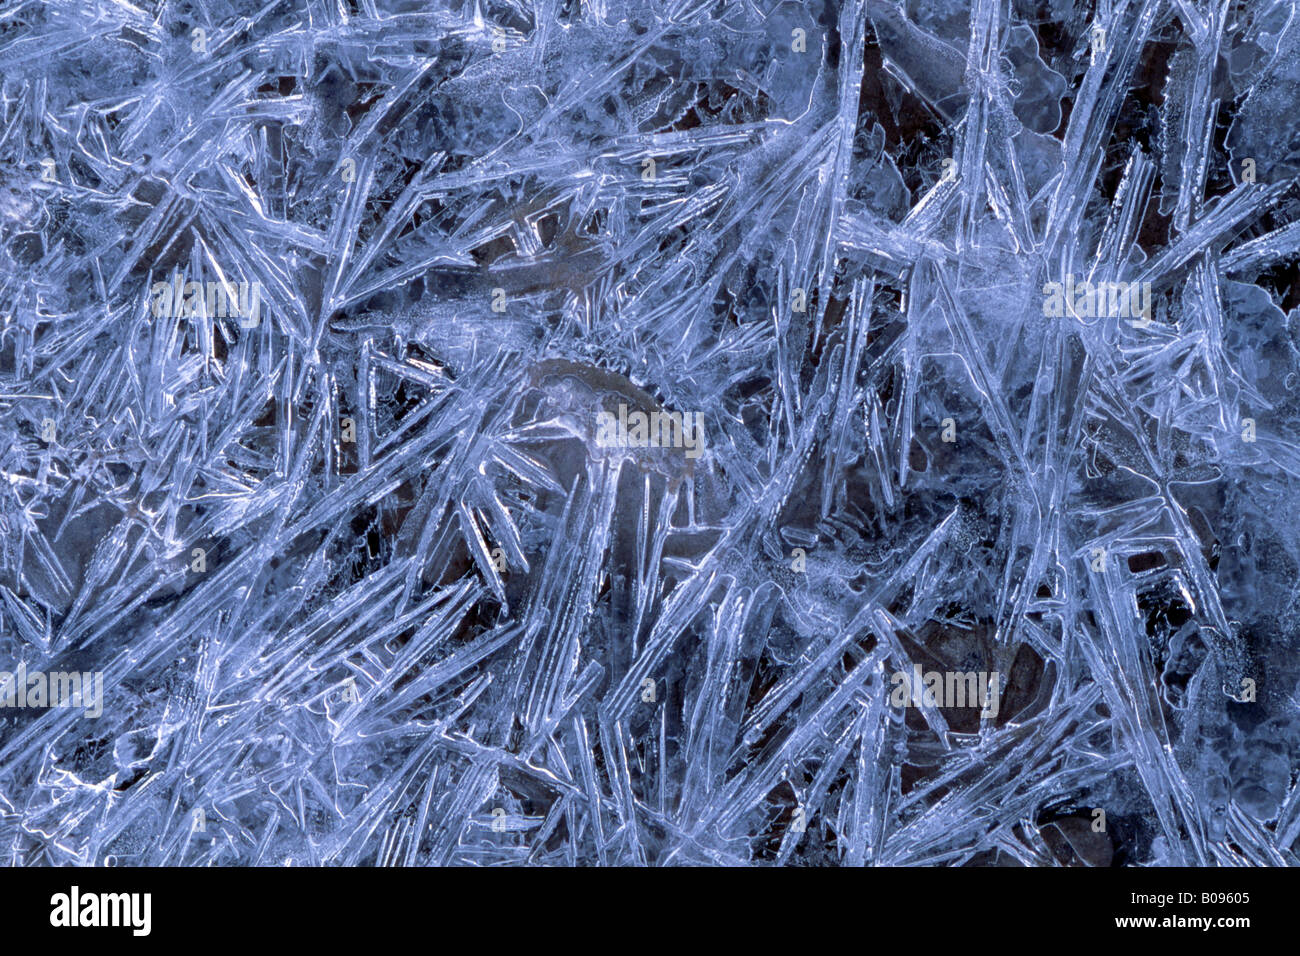 Formations de cristaux de glace, Inn, Schwaz, Tyrol, Autriche, Europe Banque D'Images